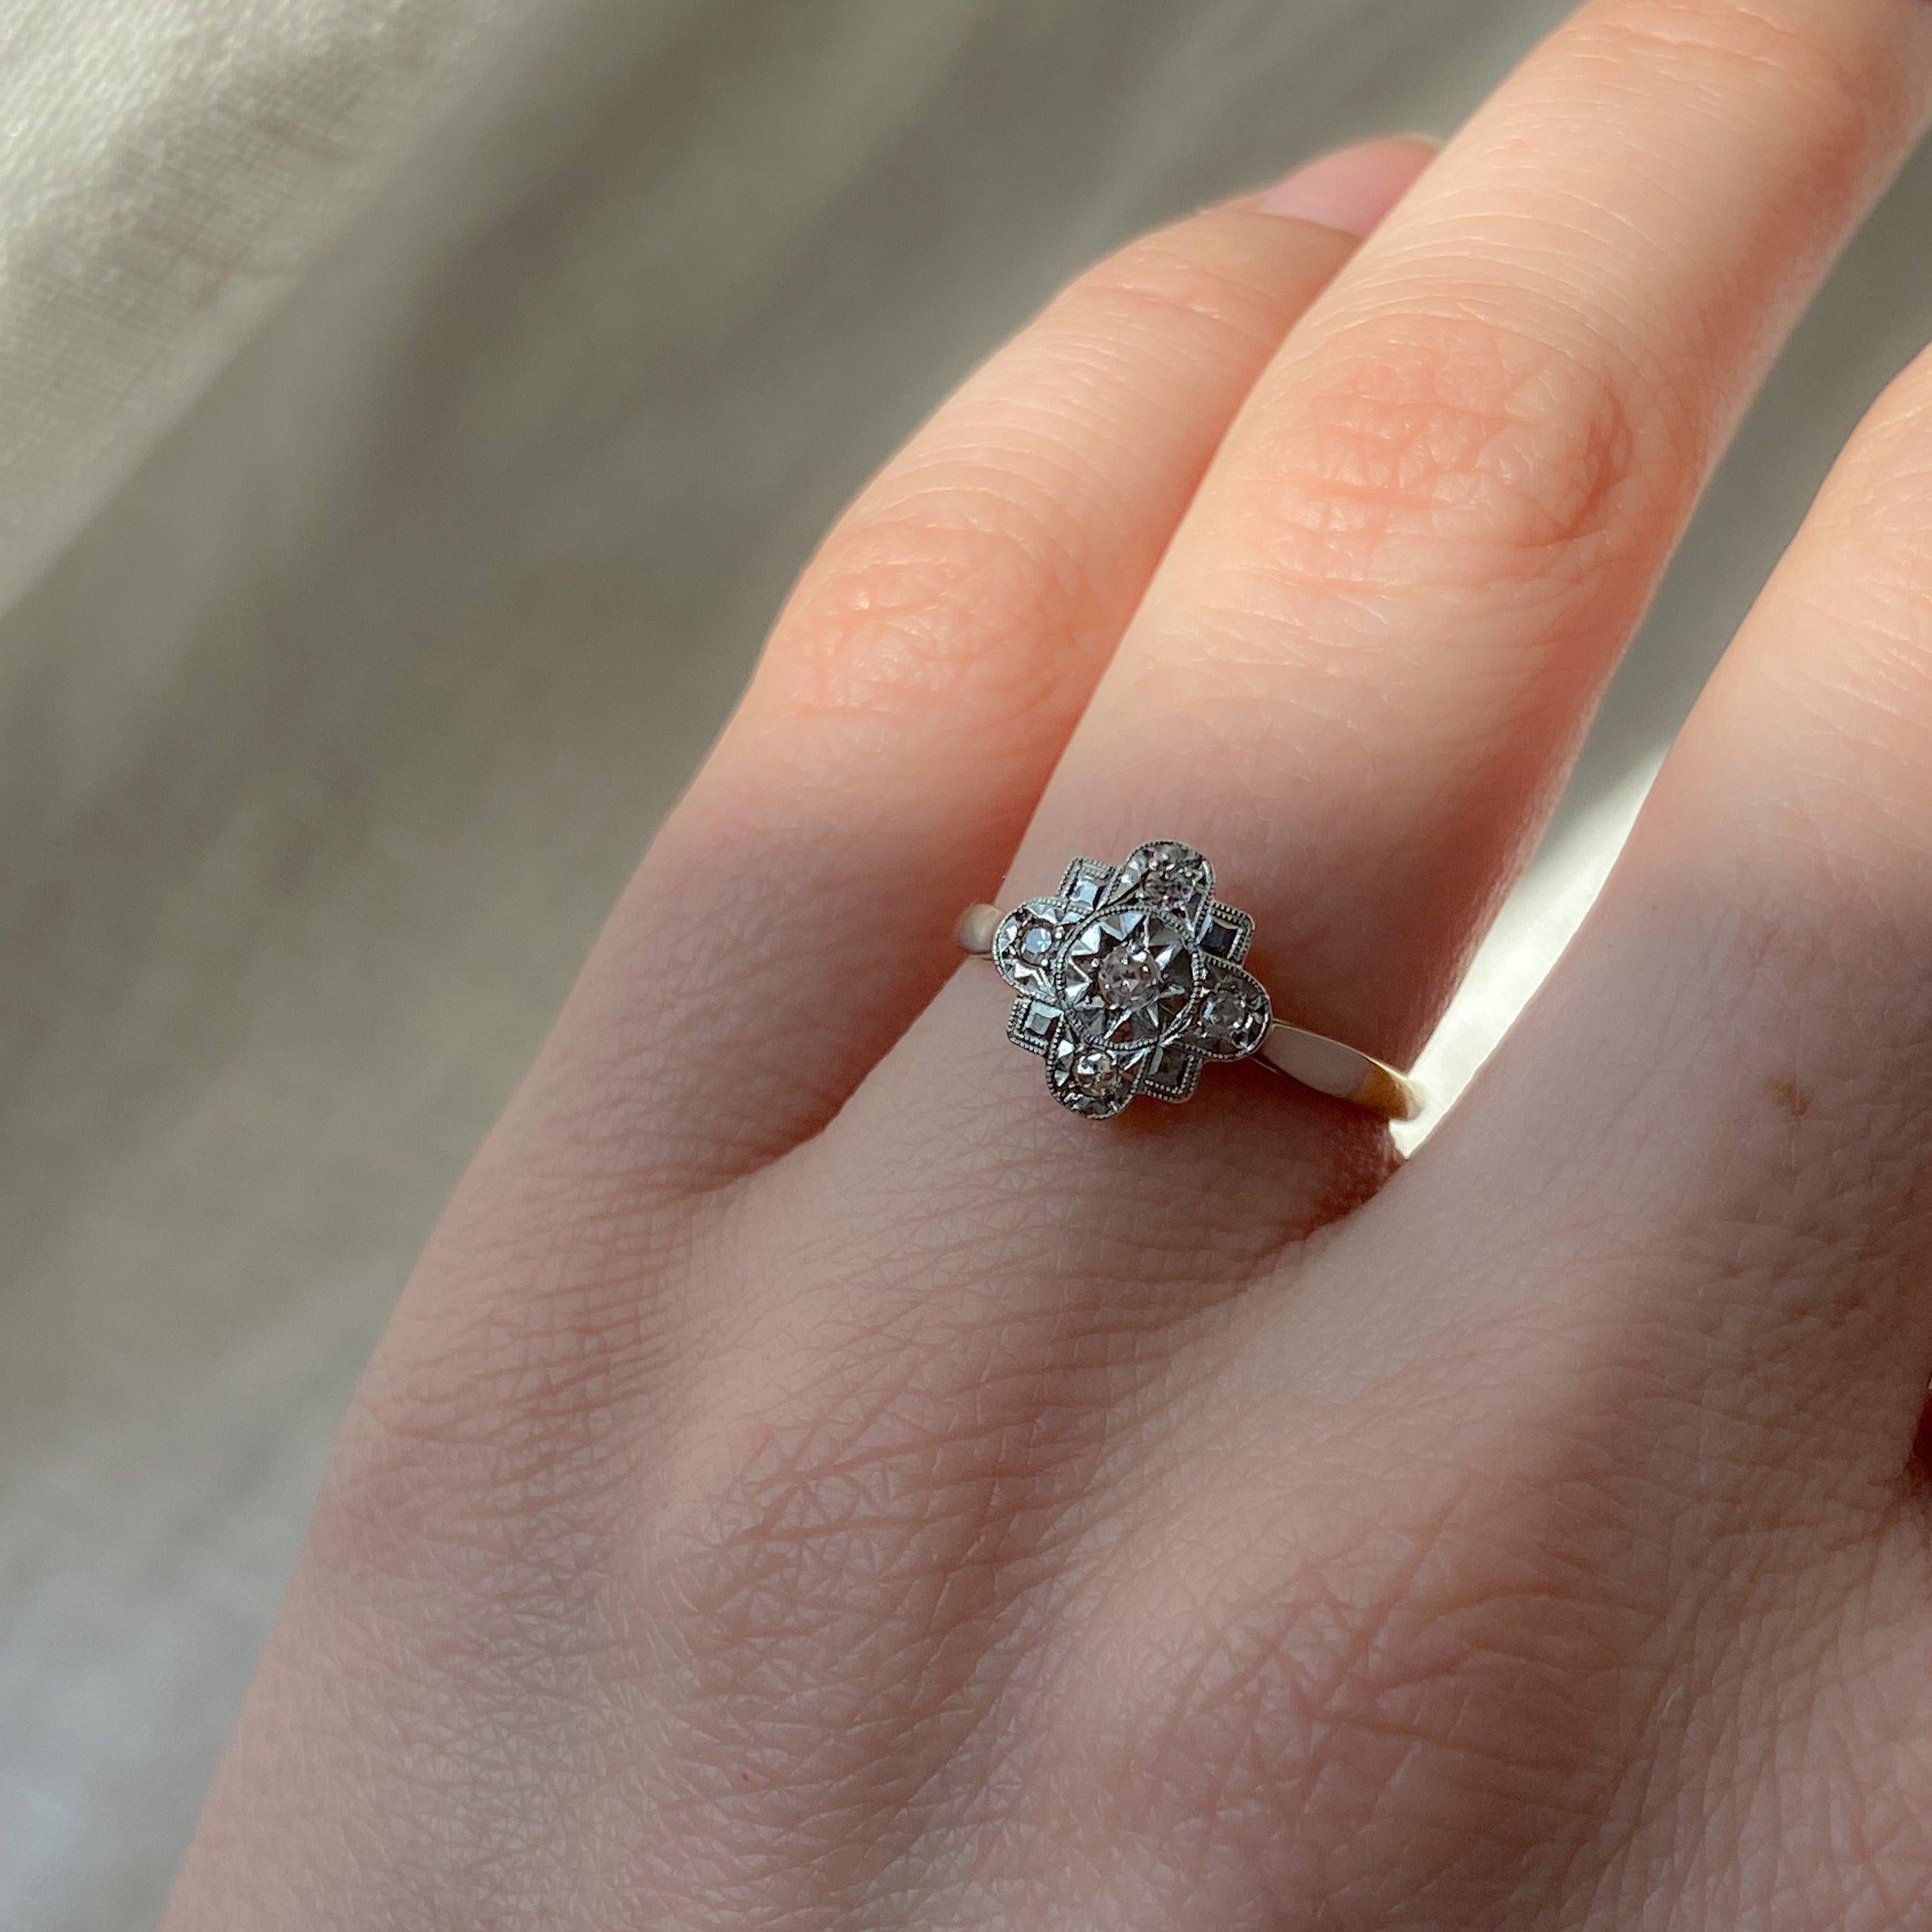 Dieser wunderschöne Ring mit Naturdiamanten ist voll von komplizierten Details, von der sternförmigen Lünette bis hin zum sternförmig gefassten Diamanten und der Millgrain-Fassung. Es ist eine ausgezeichnete Wahl für den begeisterten